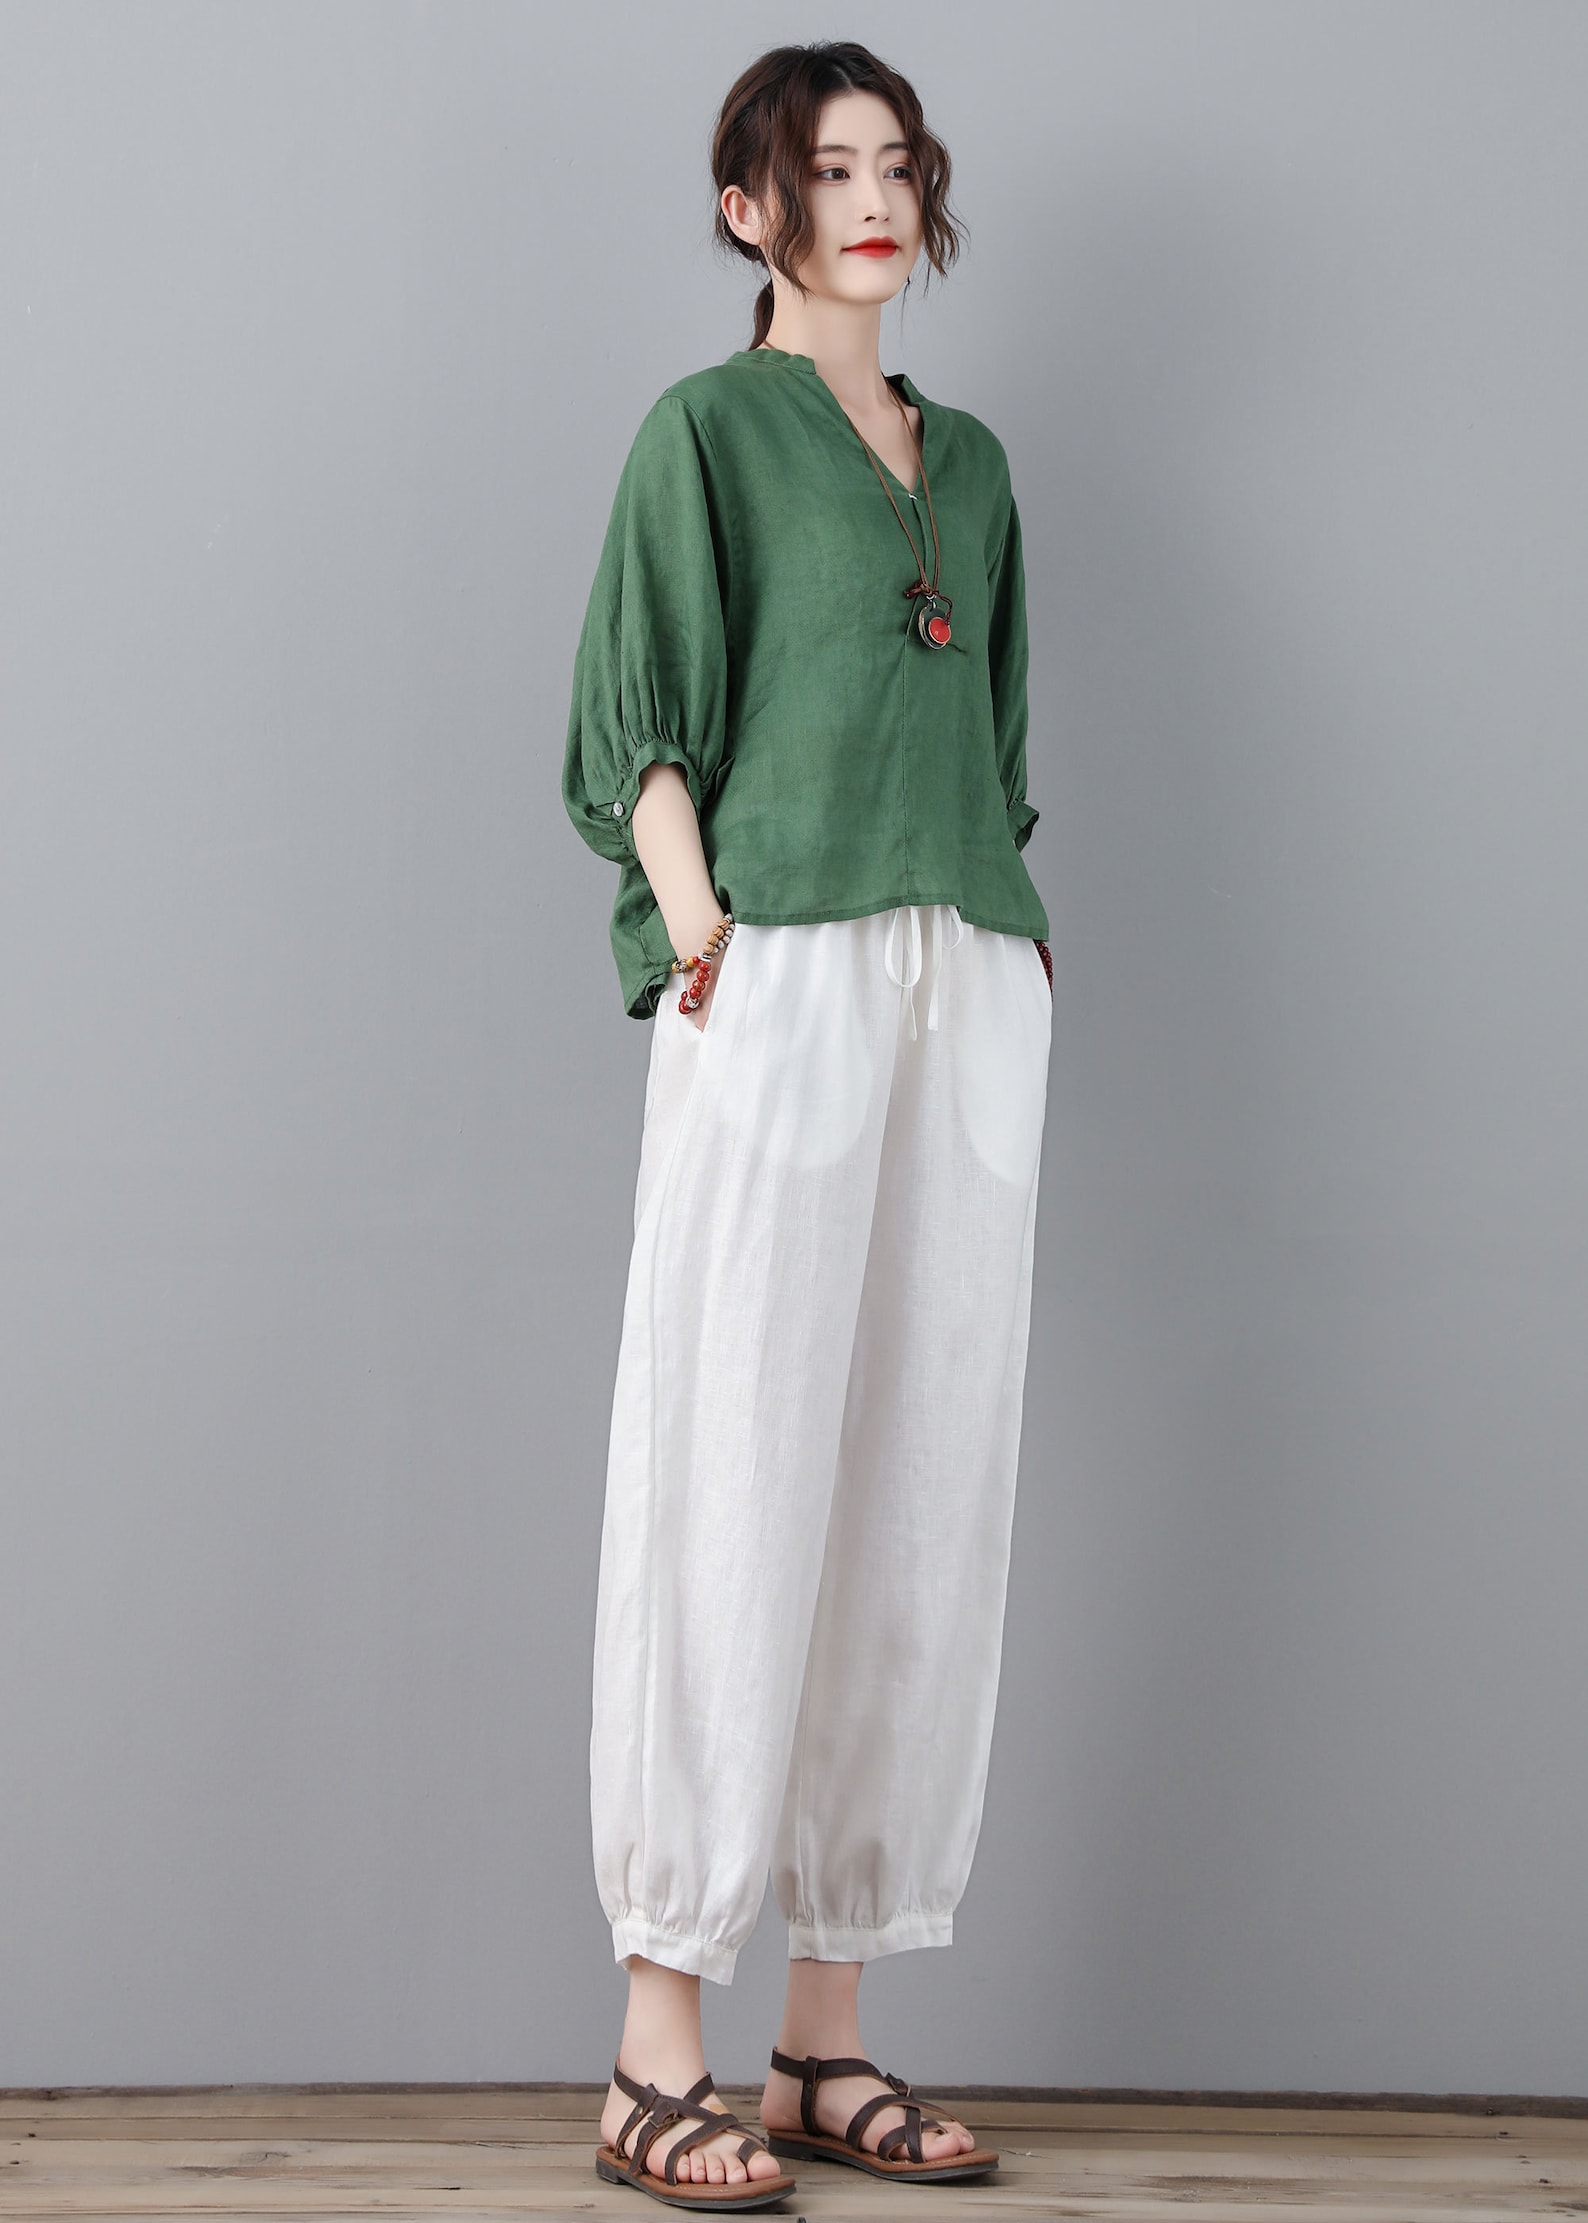 Linen Blouse Green Linen Tops Linen Blouse for Women - Etsy